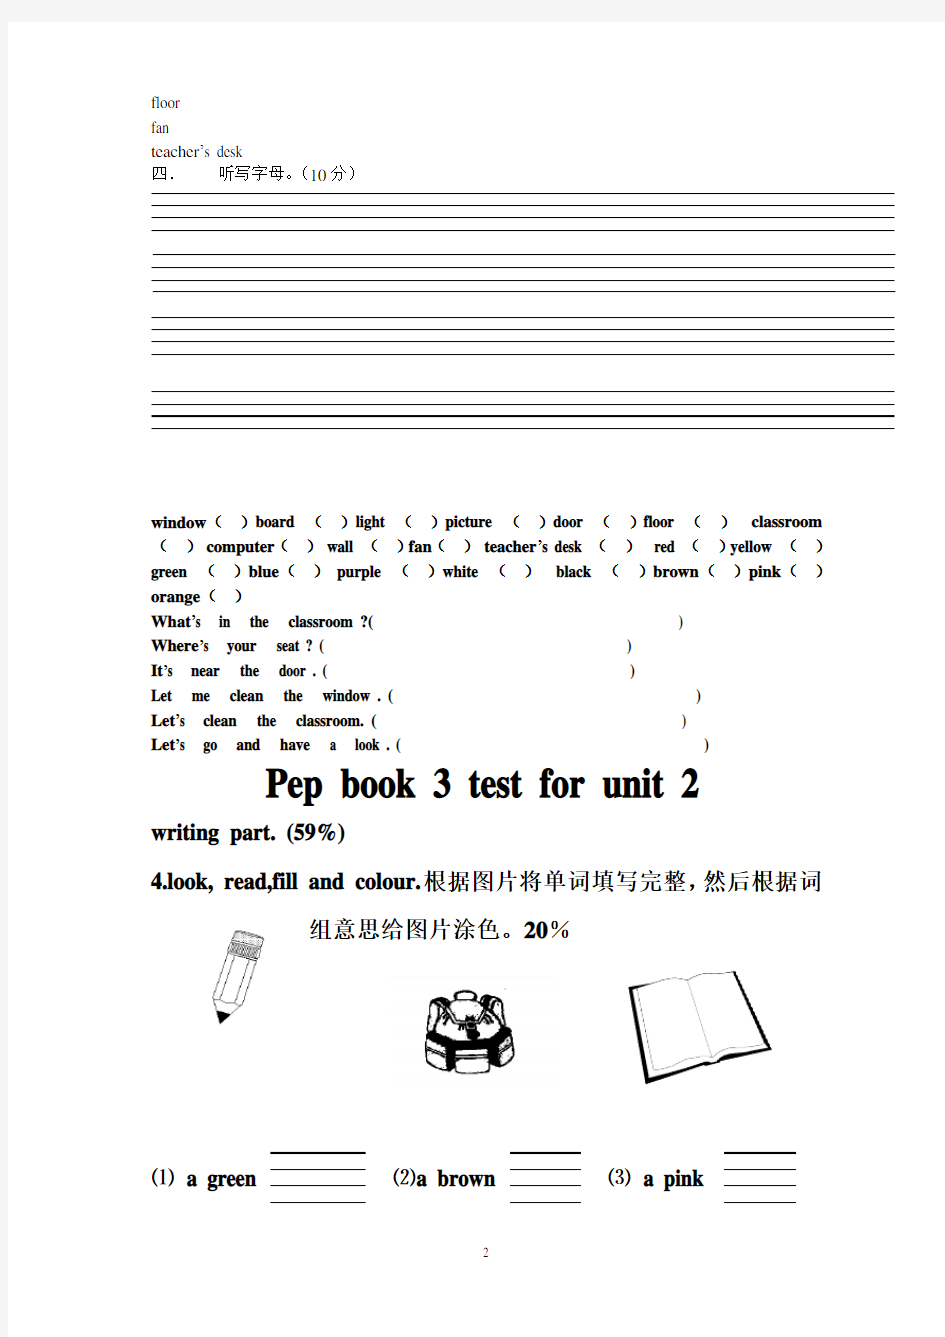 PEP_人教版小学四年级英语上册全套测试题